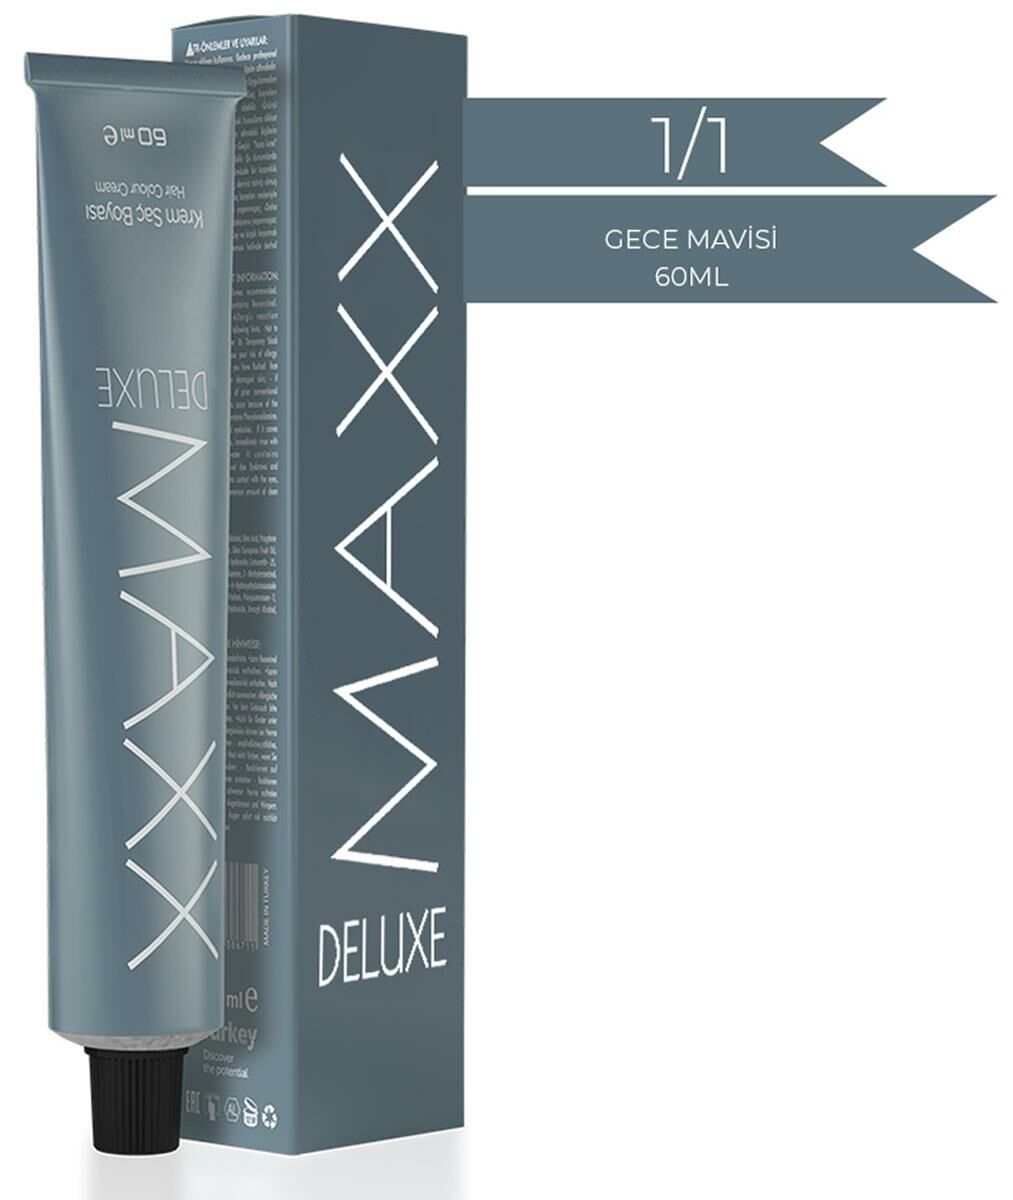 Maxx Deluxe Tüp Krem Saç Boyası 1.1 Gece Mavisi Krem 60 ml